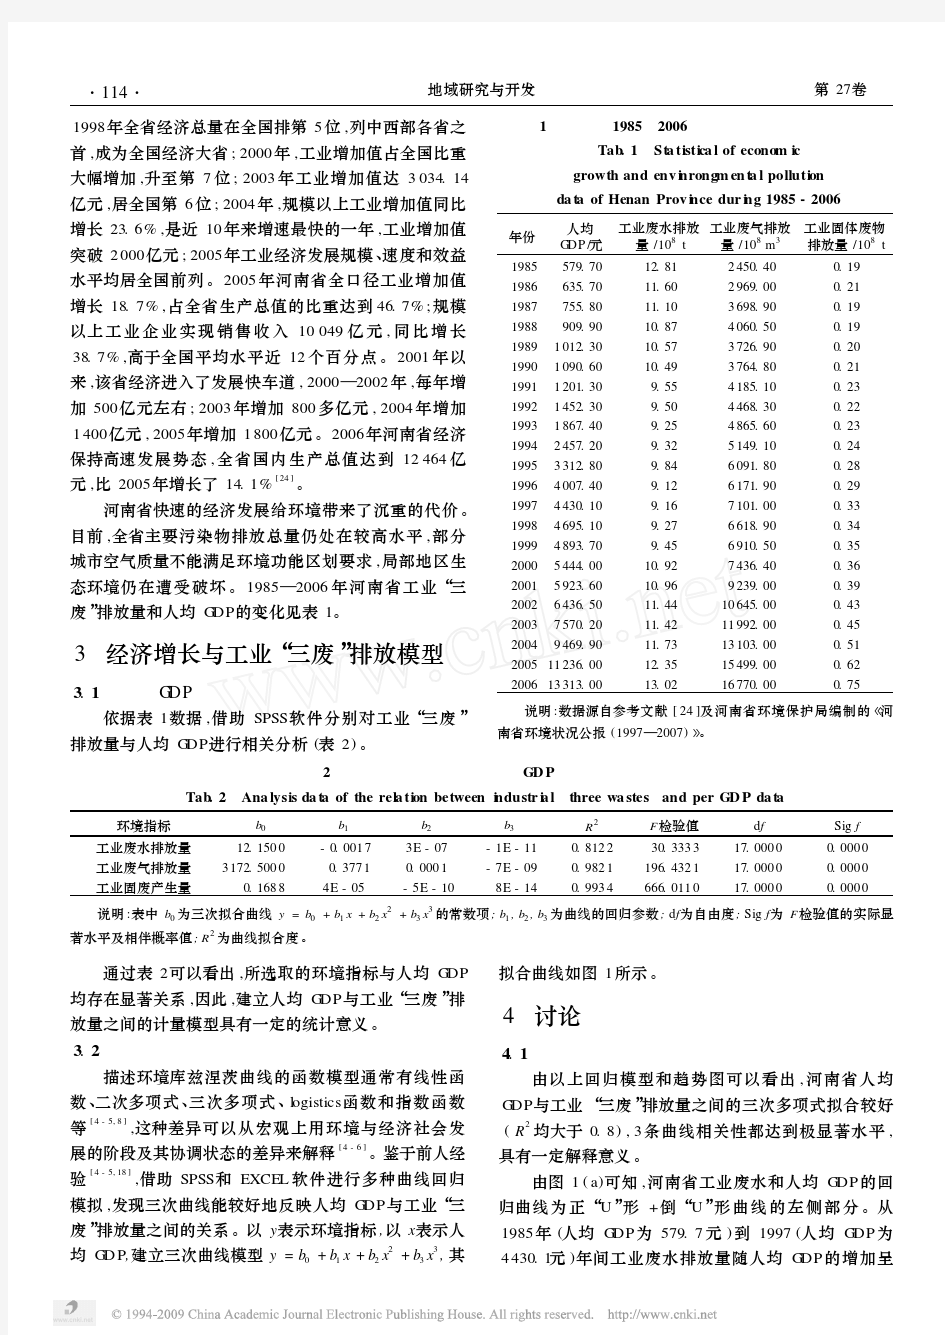 河南省1985—2006年环境库兹涅茨曲线特征分析